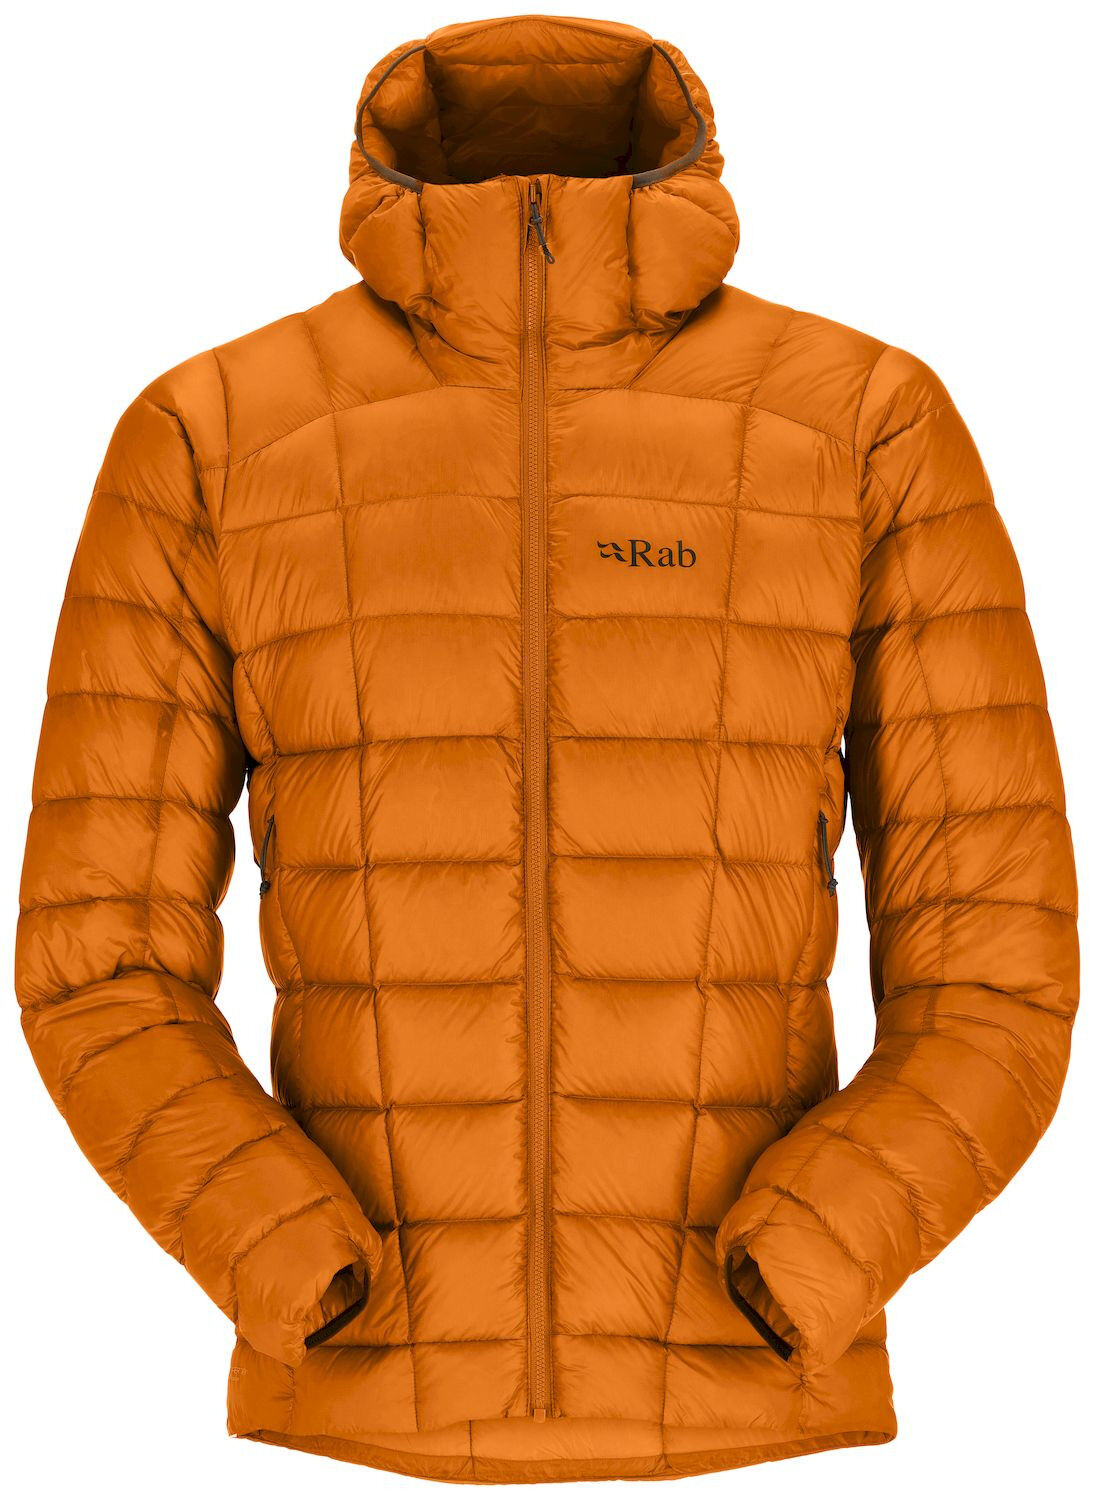 Rab Mythic Alpine Jacket - Dunjakke - Herrer